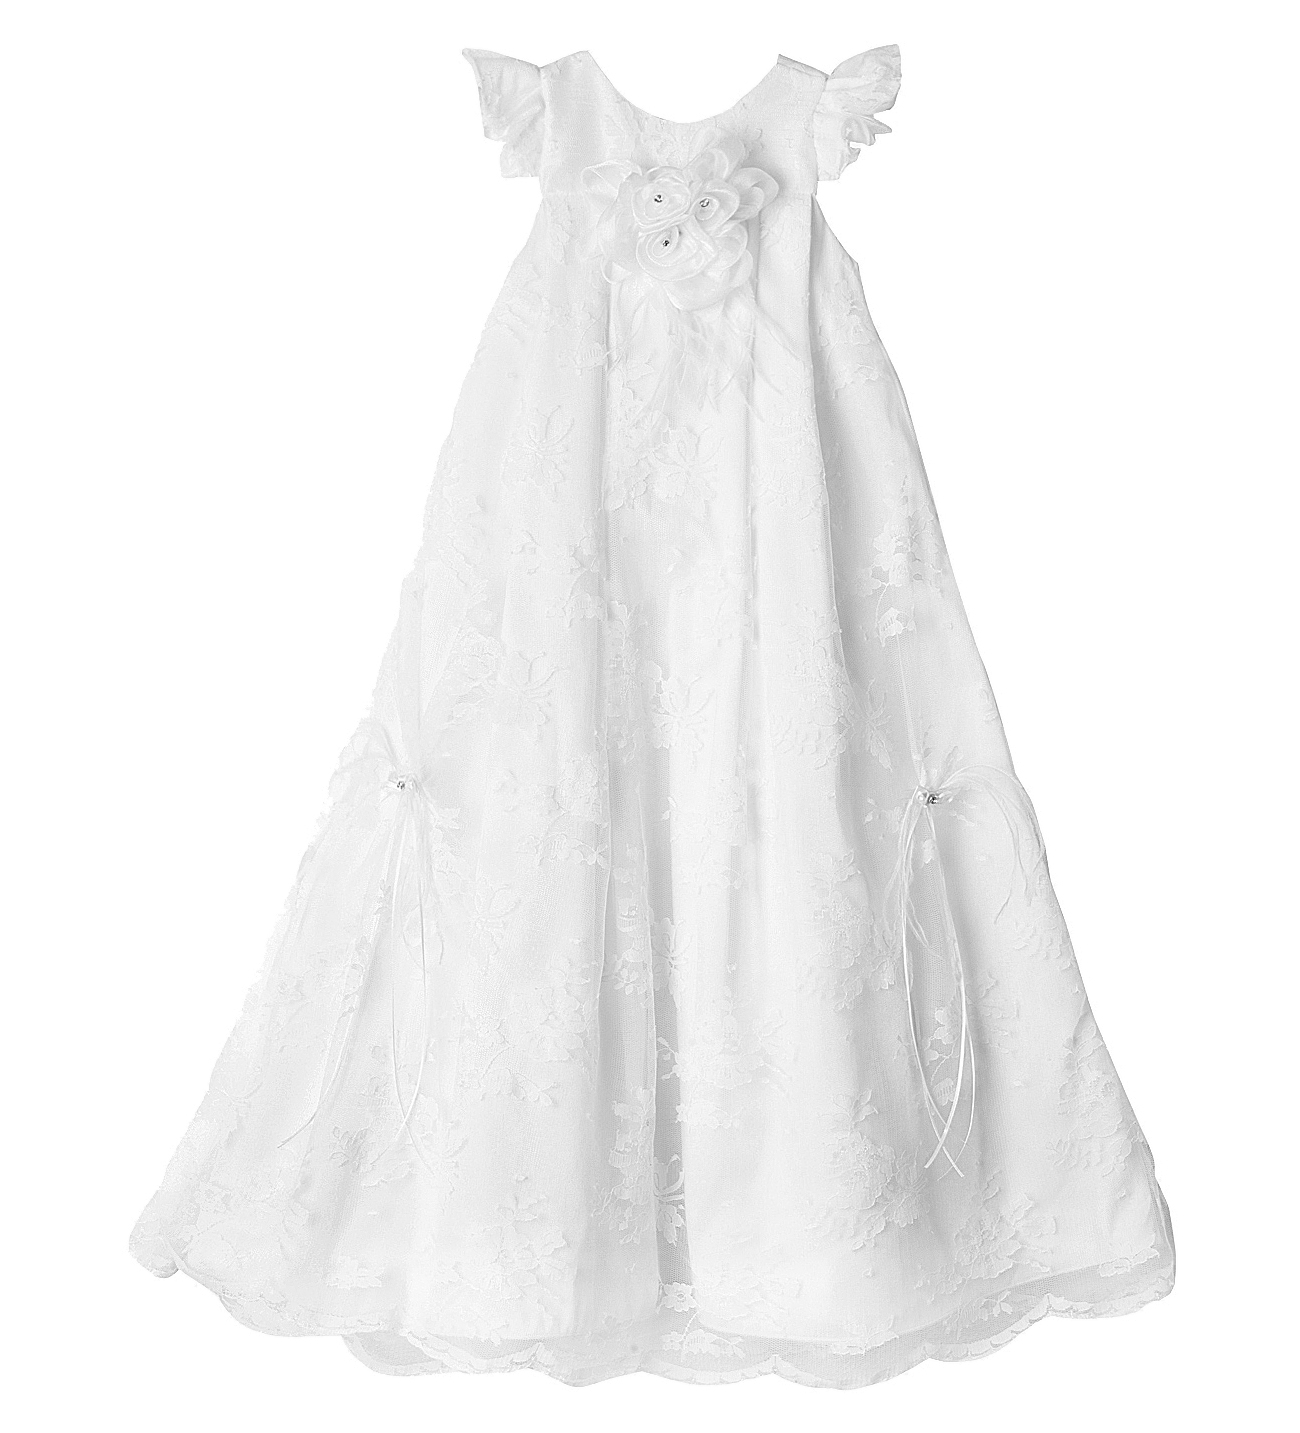 NstNastasia Βαπτιστικό Φόρεμα Margaret Cavendish 3911